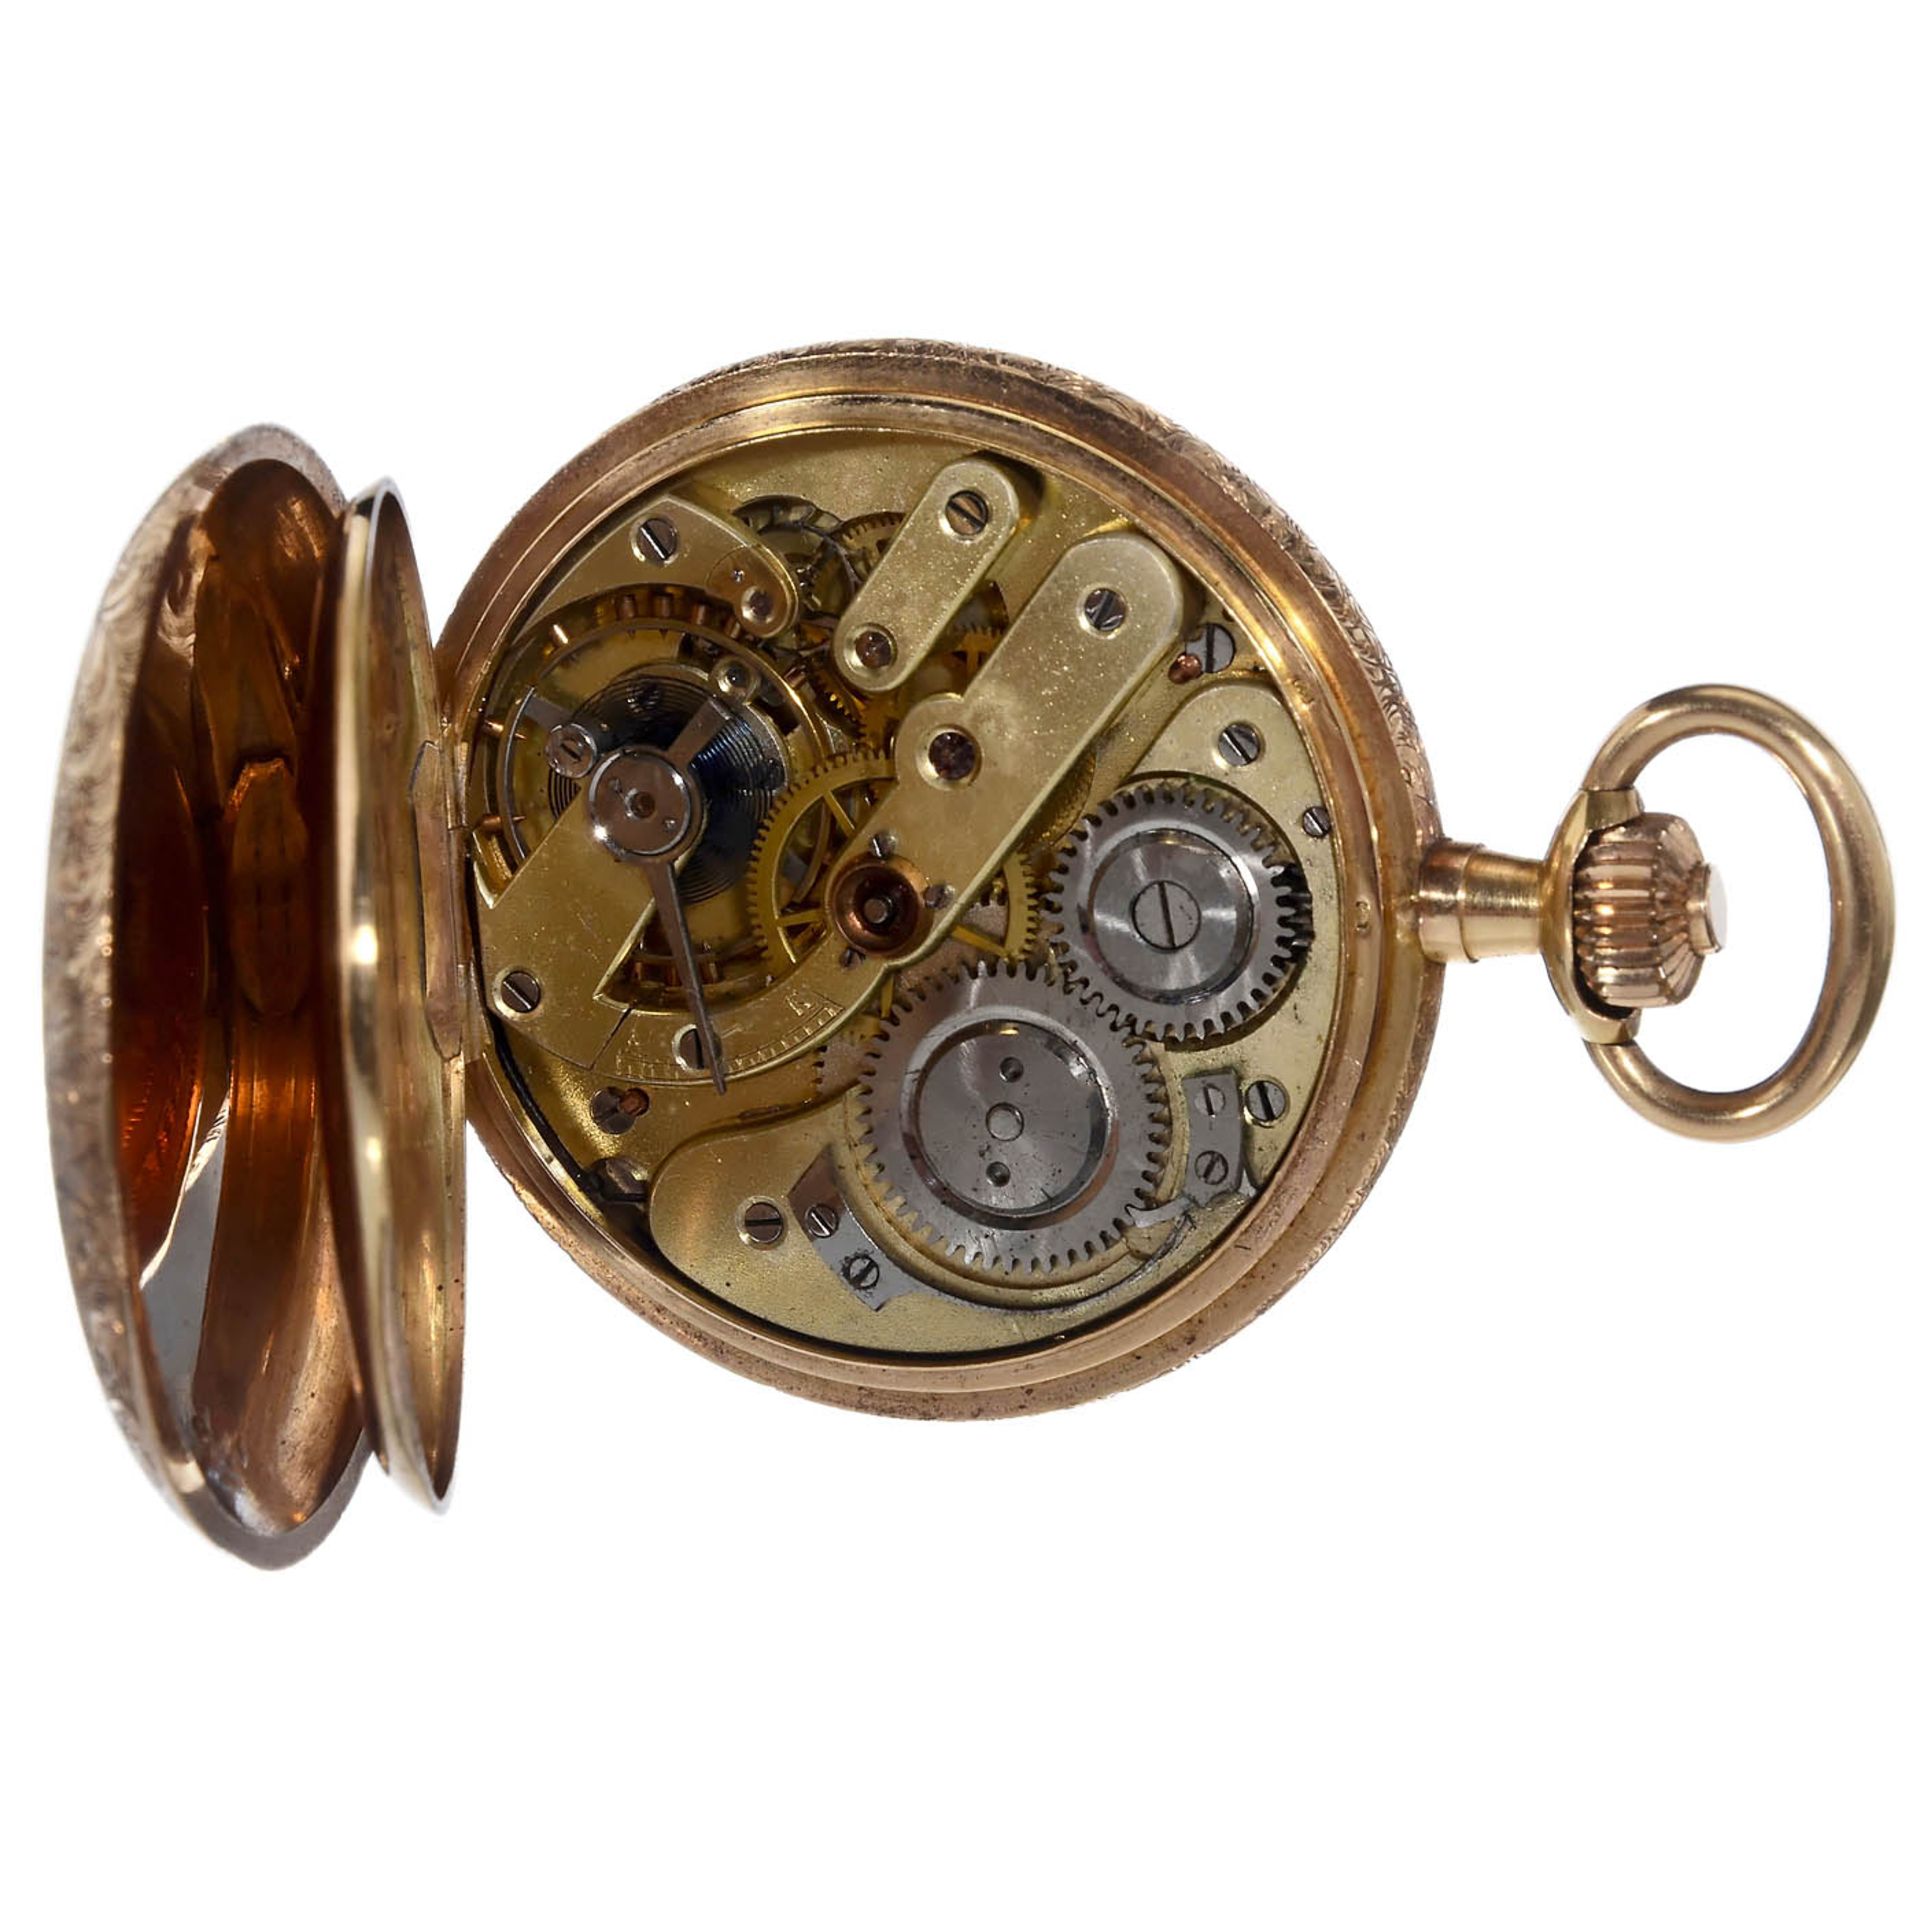 Goldene Taschenuhr (18 Karat) von Dubois, um 1885 Genf, Schweiz. Nr. 72950, Sprungdeckel, - Bild 2 aus 6